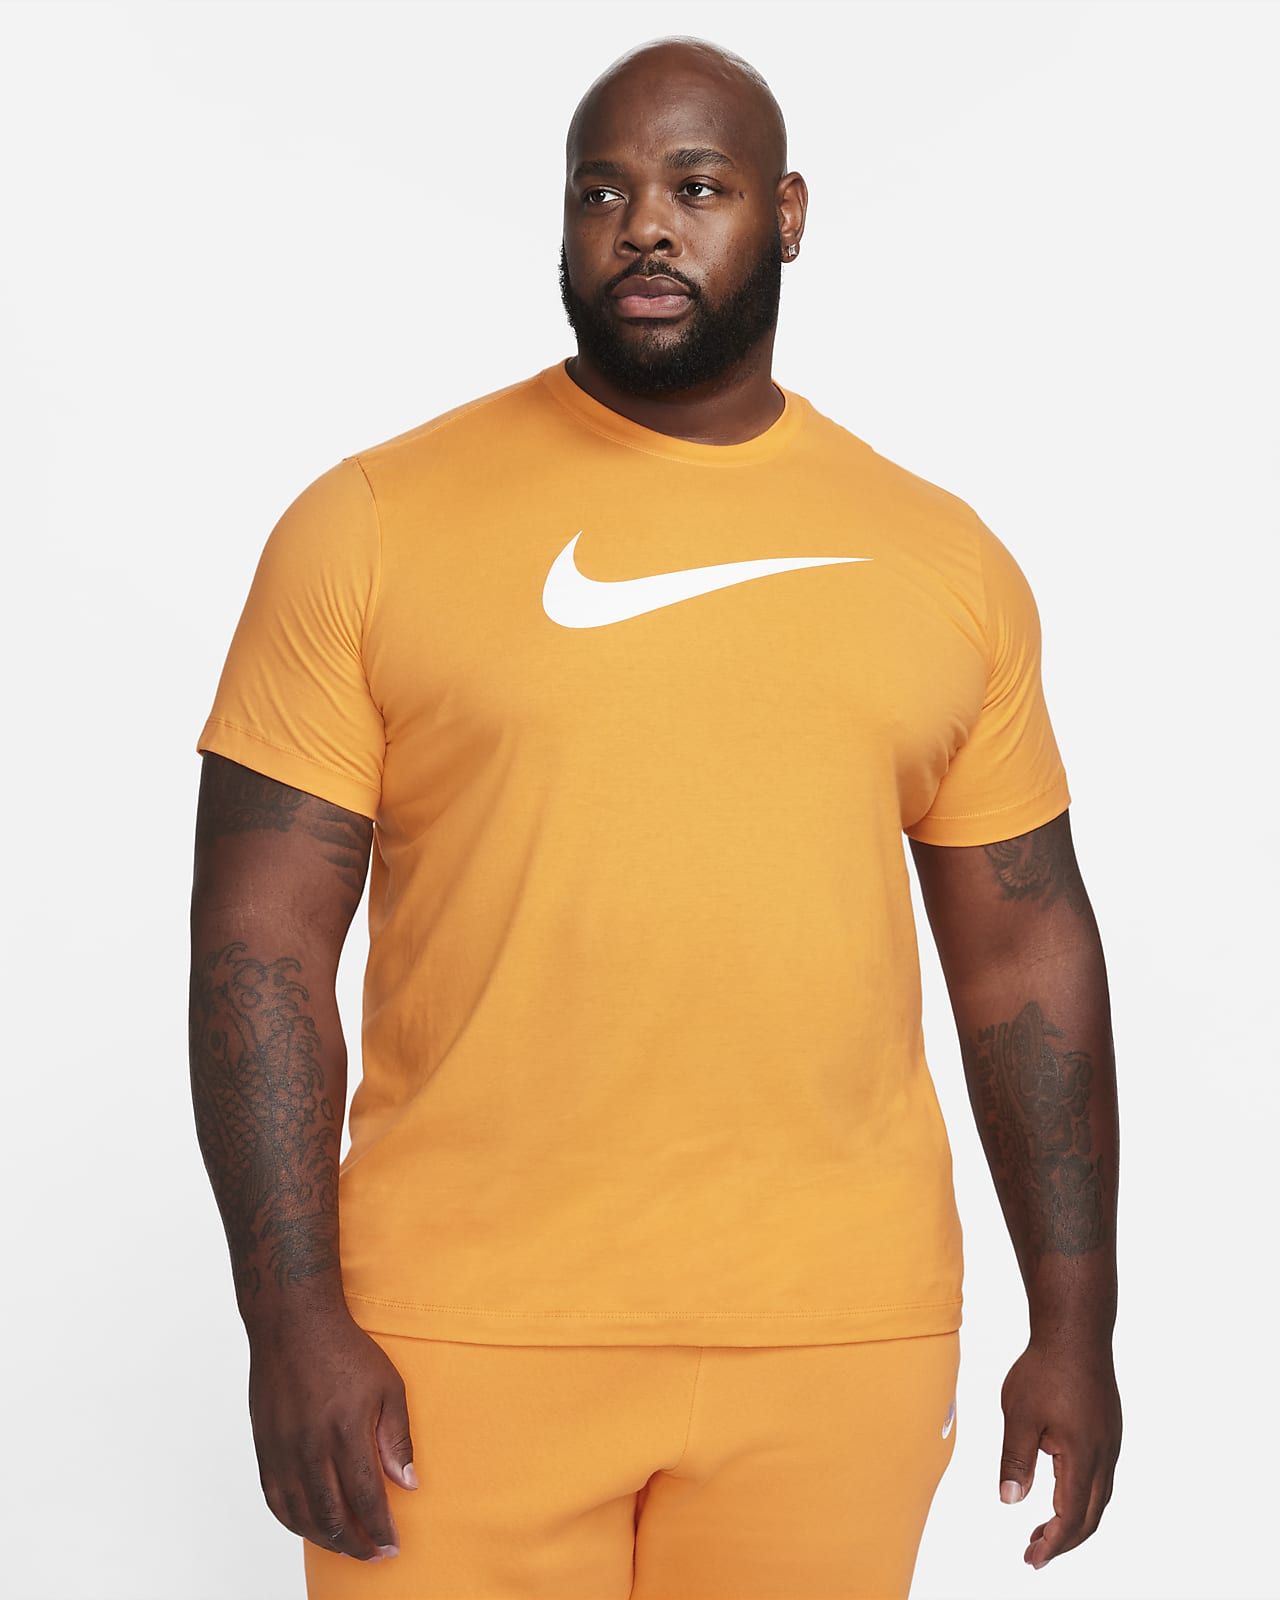 Nike Men's T-Shirt - Orange - XL